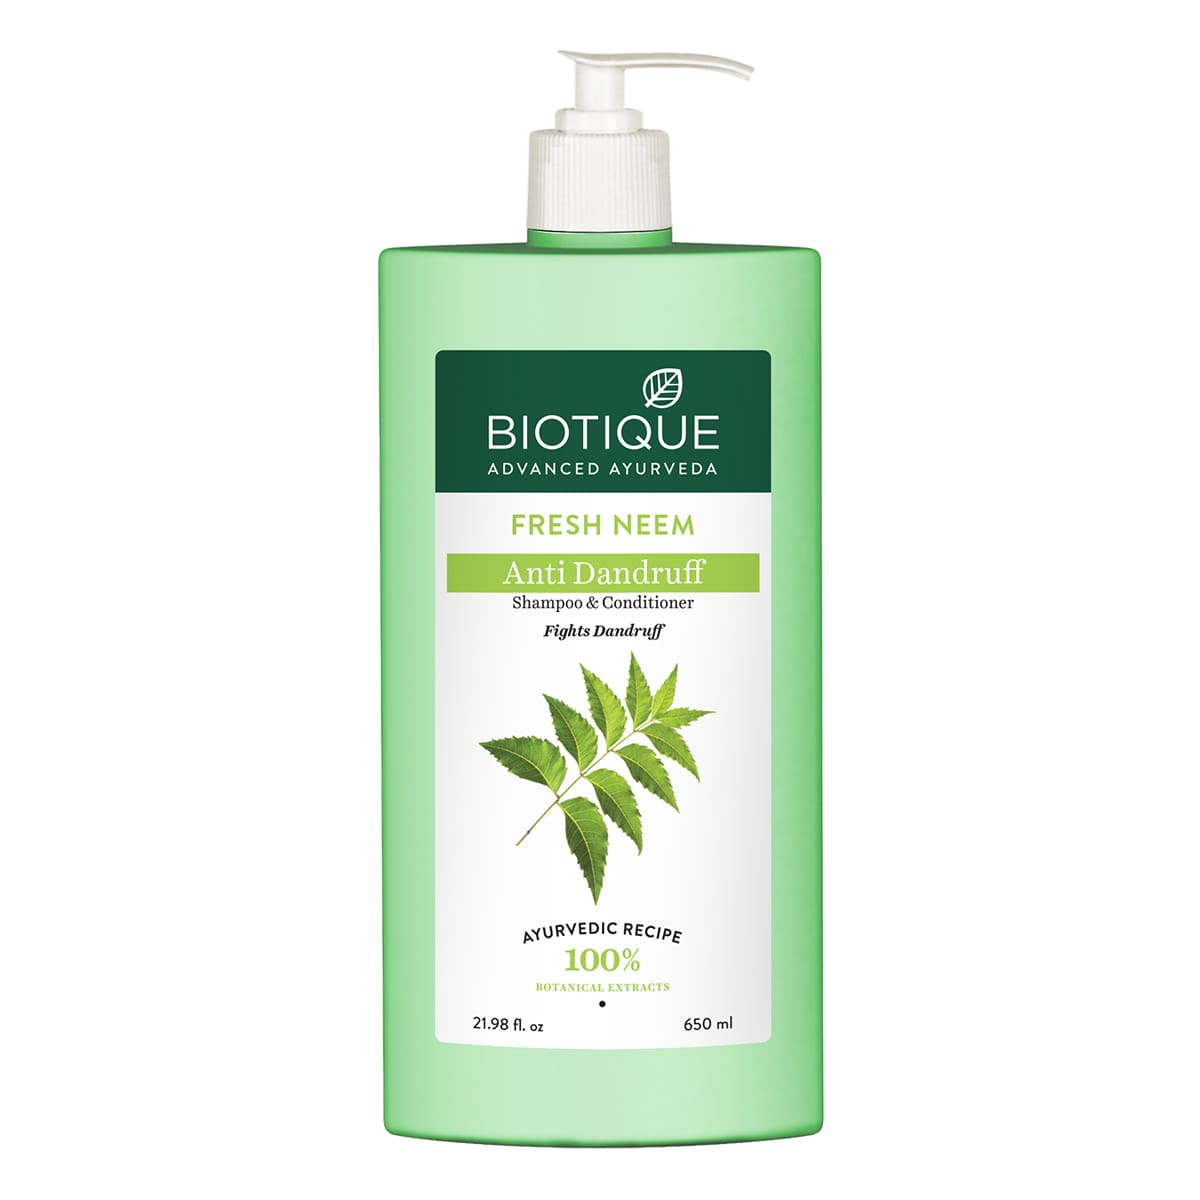 Biotique Bio/Fresh Neem Anti Dandruff Shampoo & Conditioner - Buy in USA AUSTRALIA CANADA